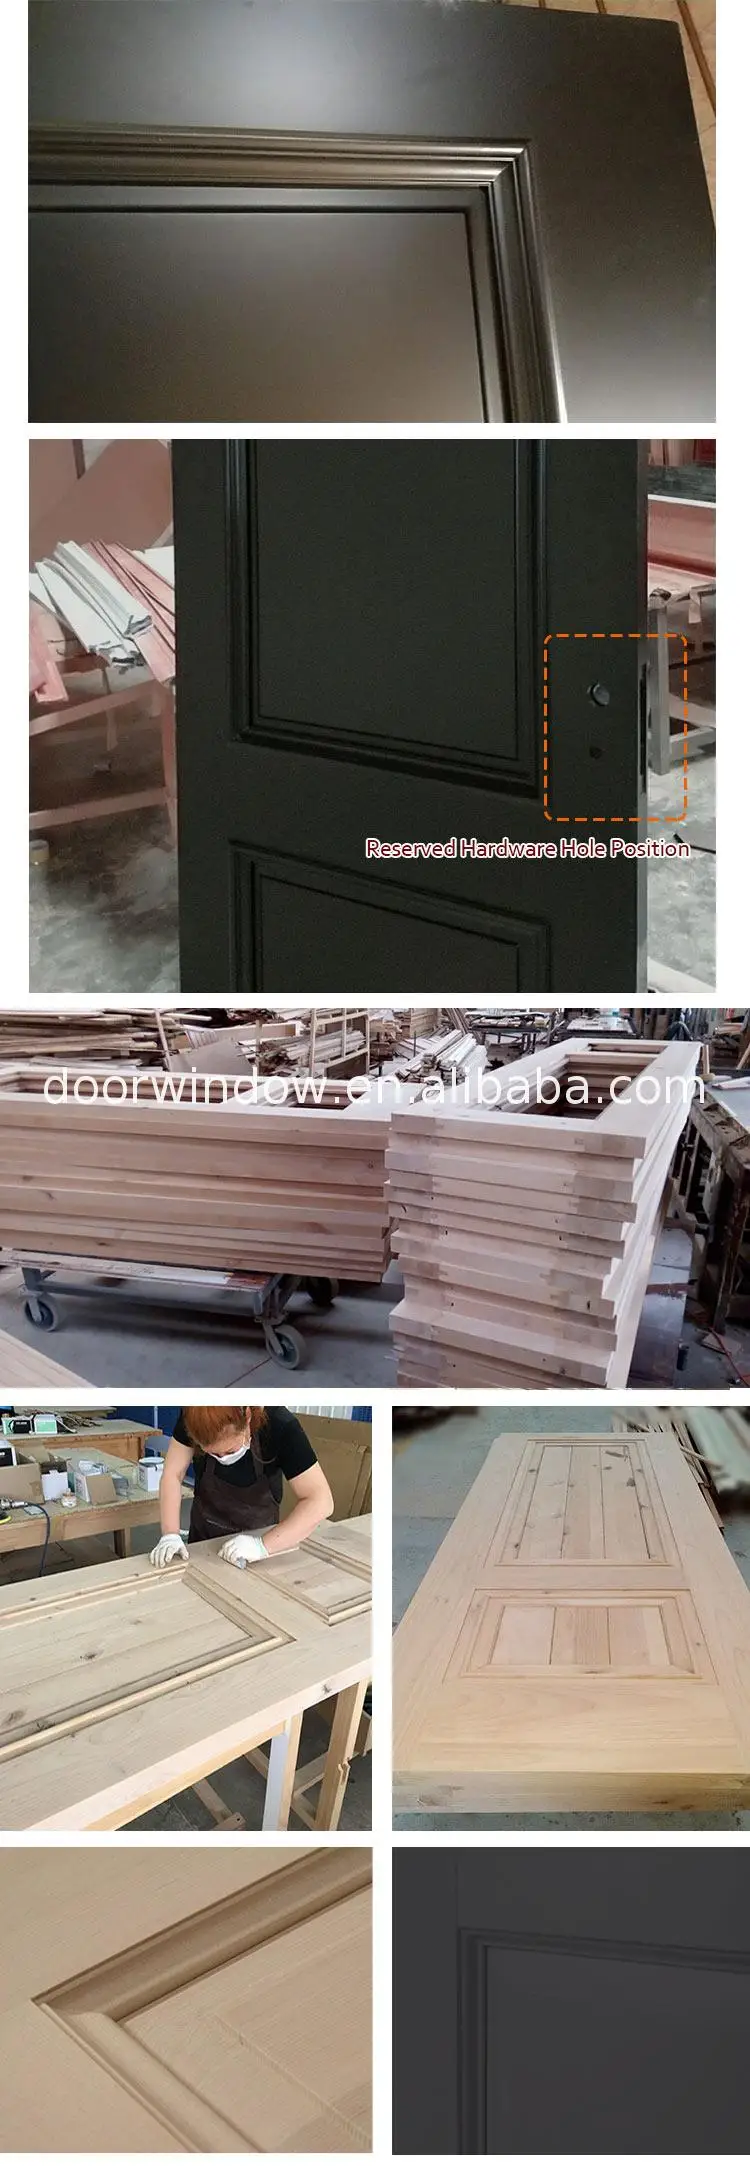 Wood panel door design interior doors polish